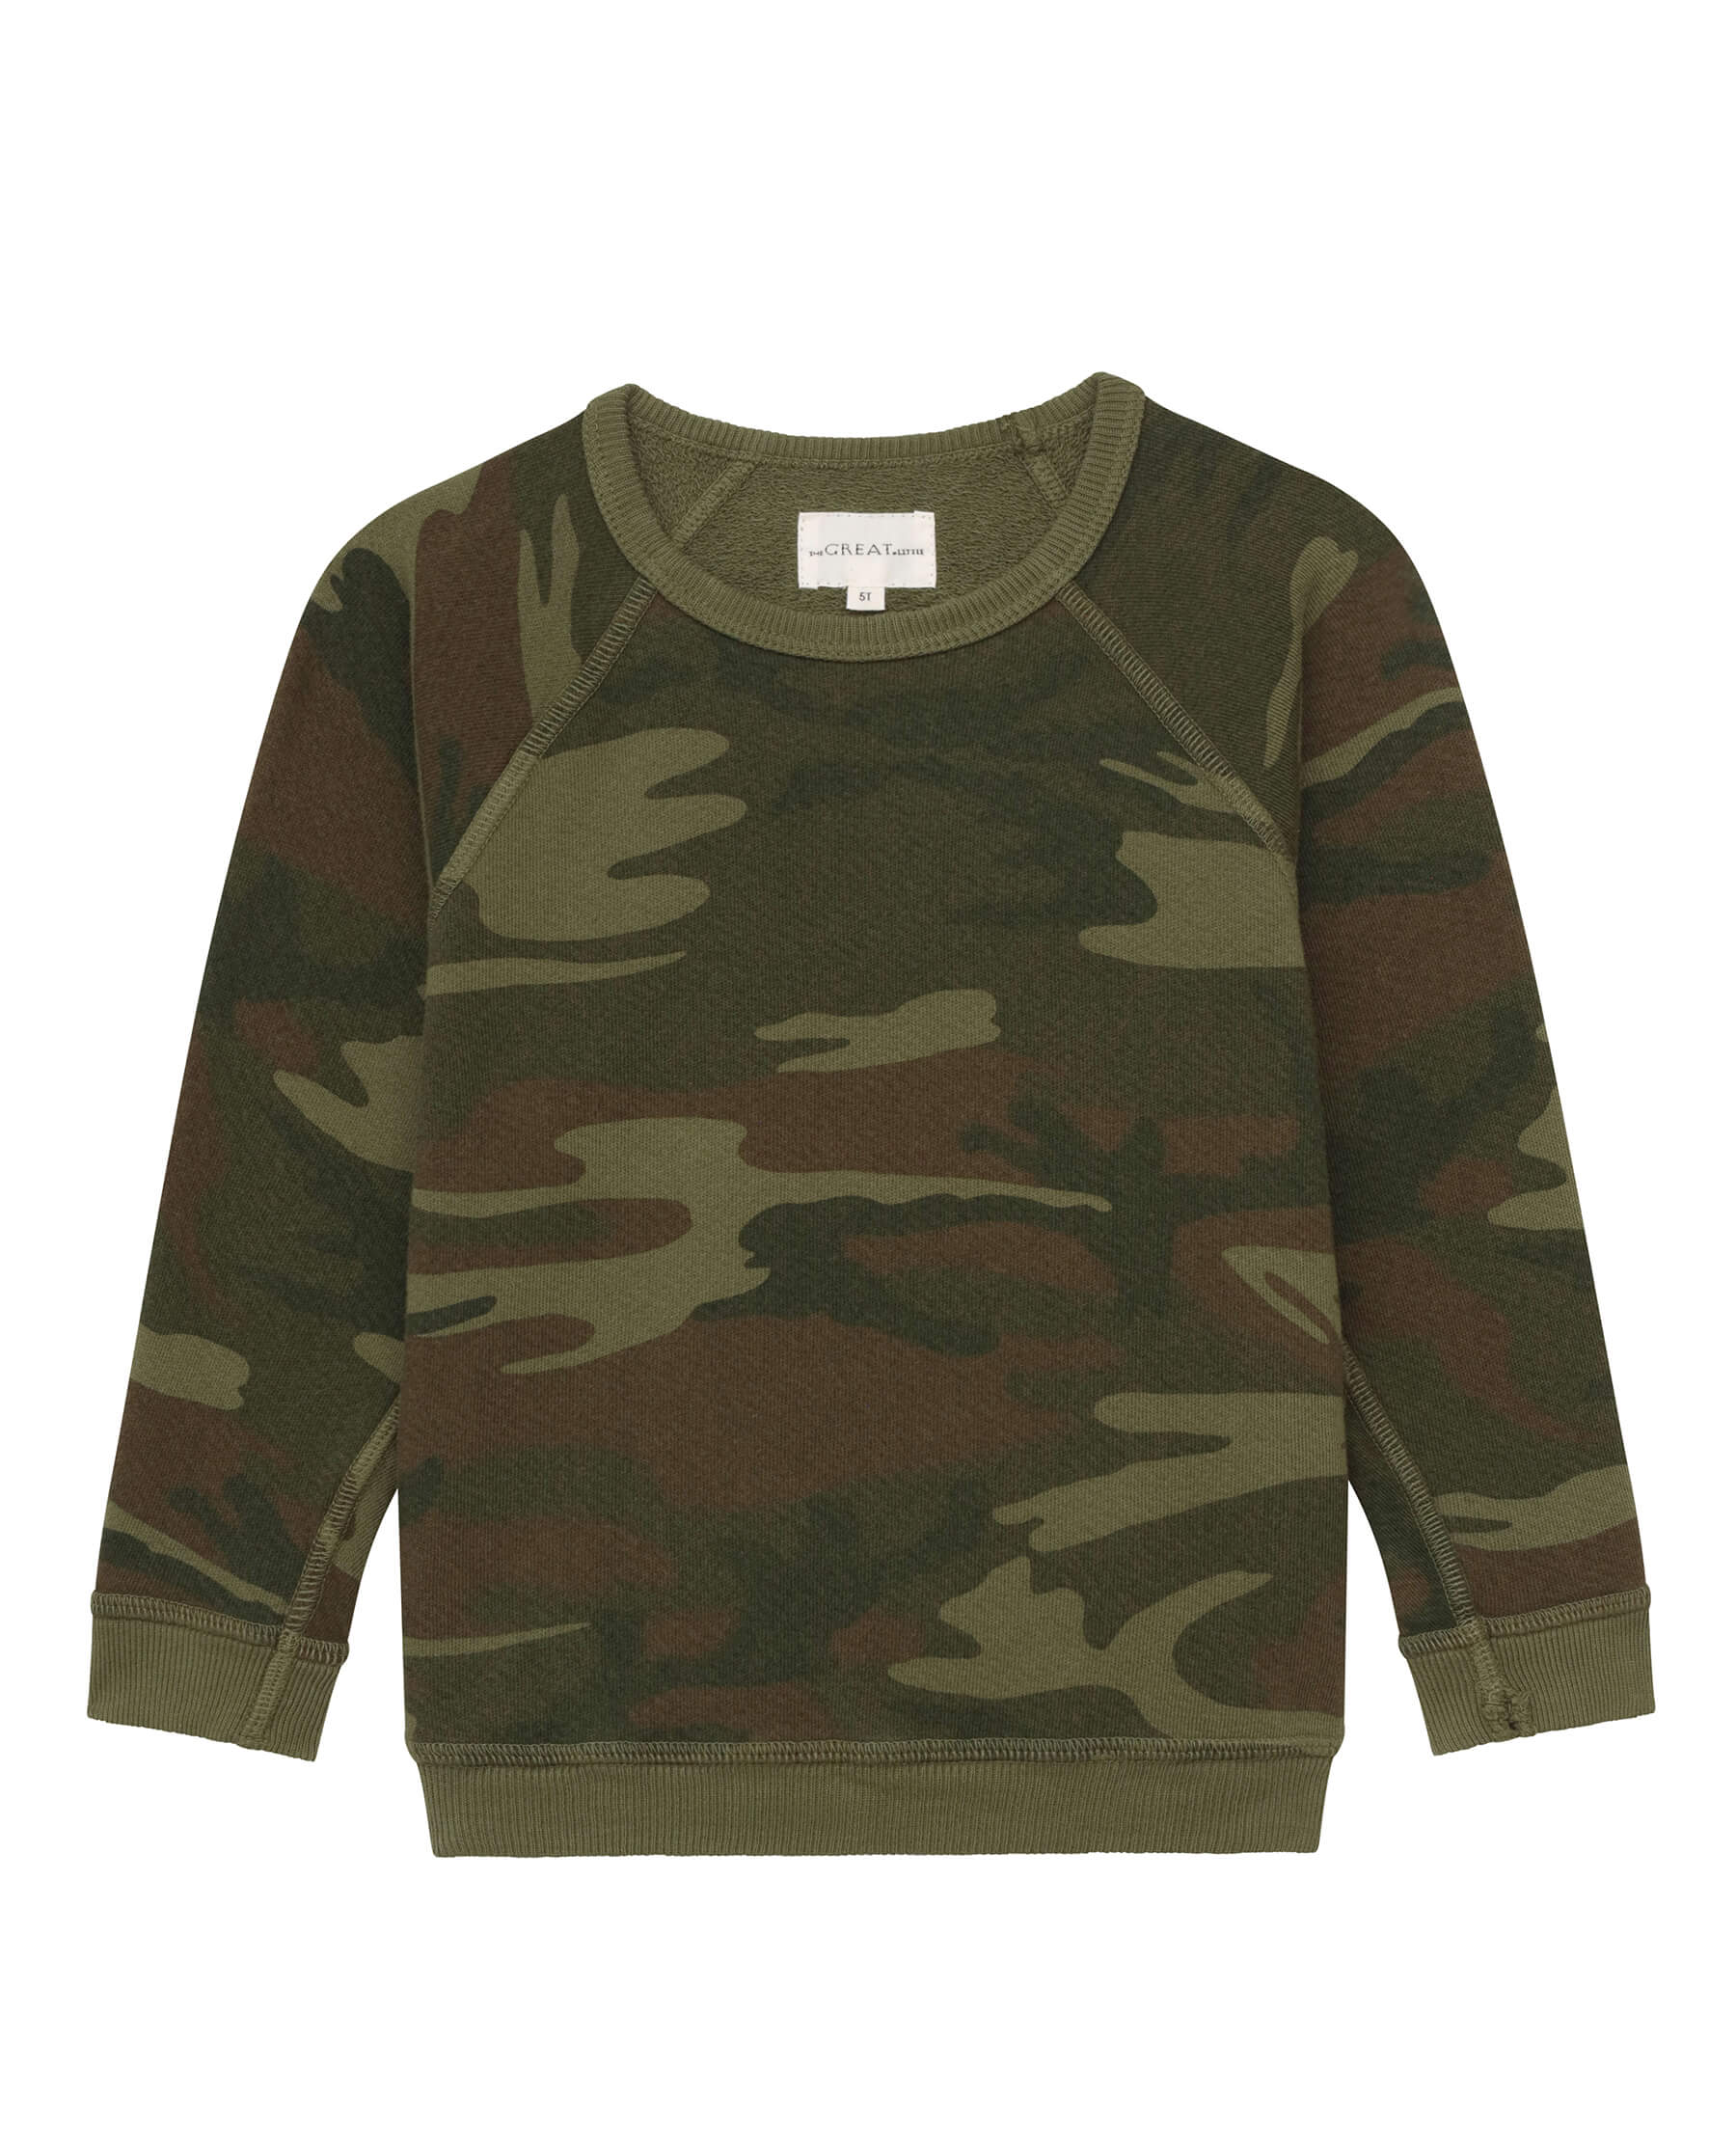 The Little College Sweatshirt. -- Deep Woods Camo SWEATSHIRTS THE GREAT. SP24 LITTLE CAMO